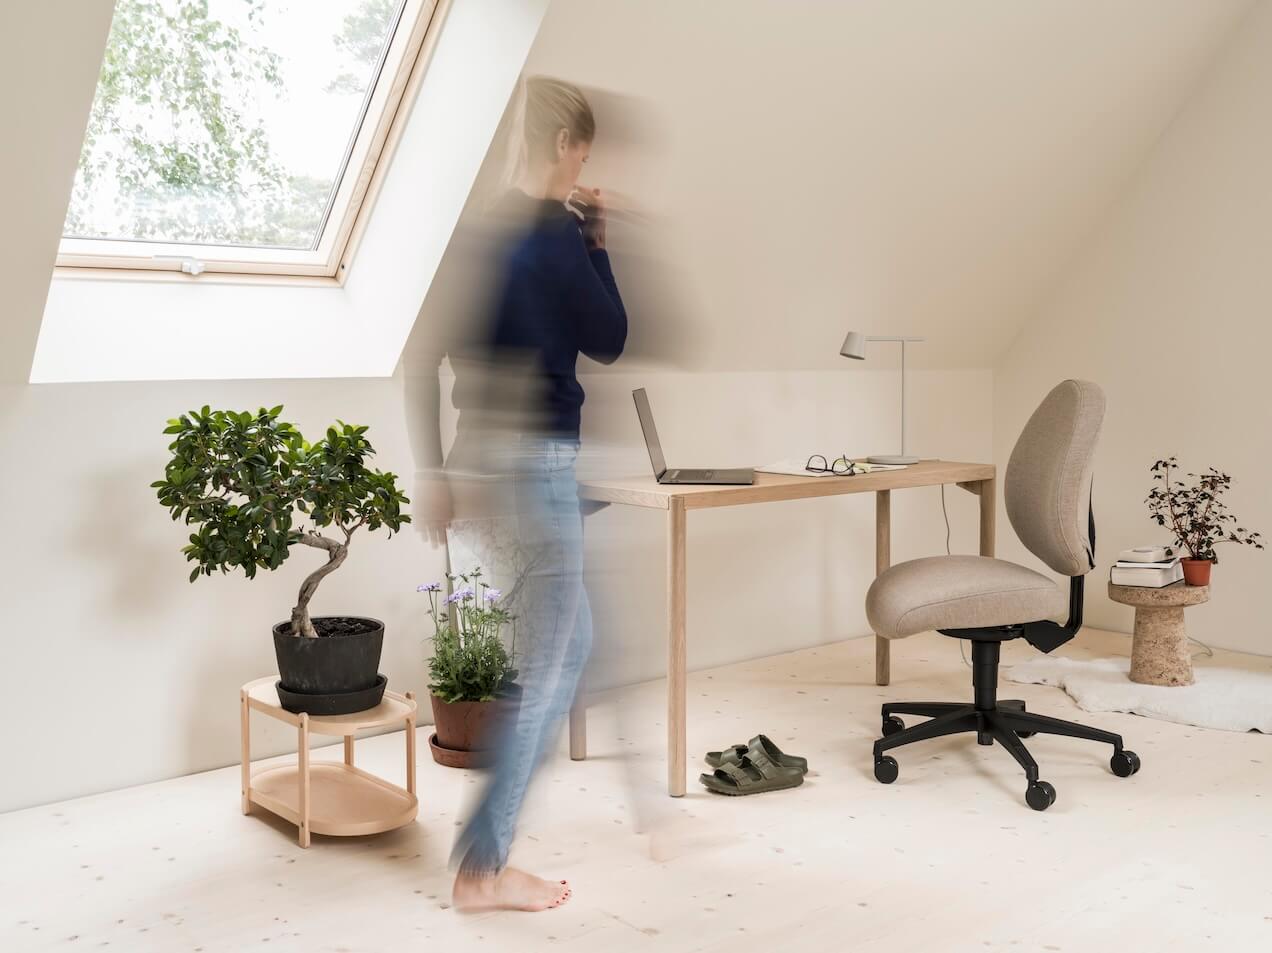 En kvinna är uppe och rör sig på sitt hemmakontor, med ett fönster, växter, ett bord med en arbetsstol i ett ljust vindsrum med sluttande tak.